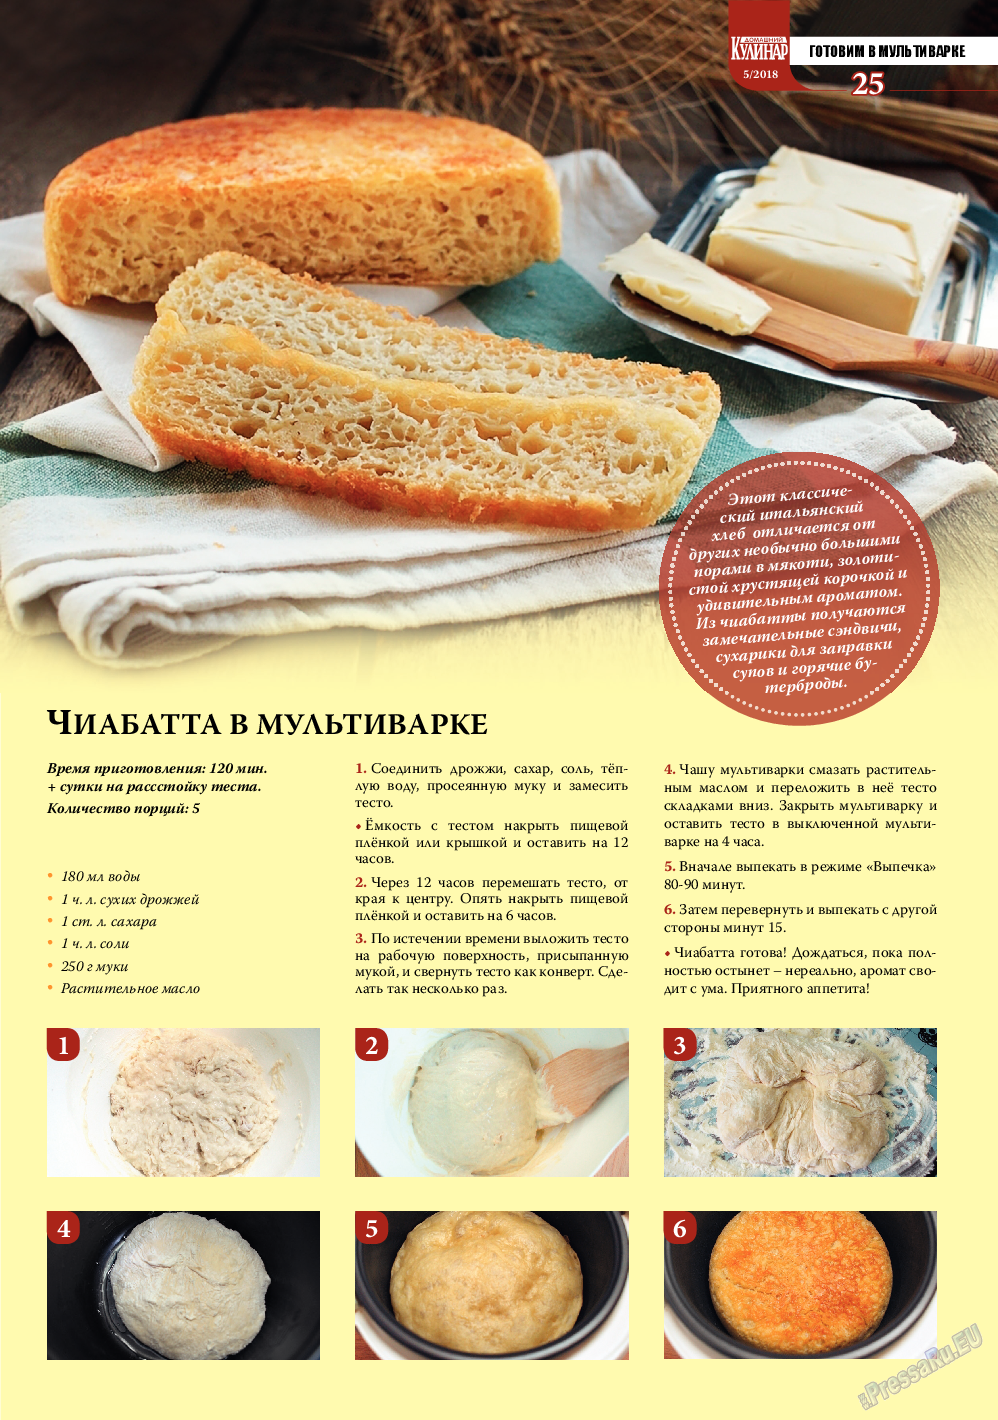 Домашний кулинар, журнал. 2018 №5 стр.25